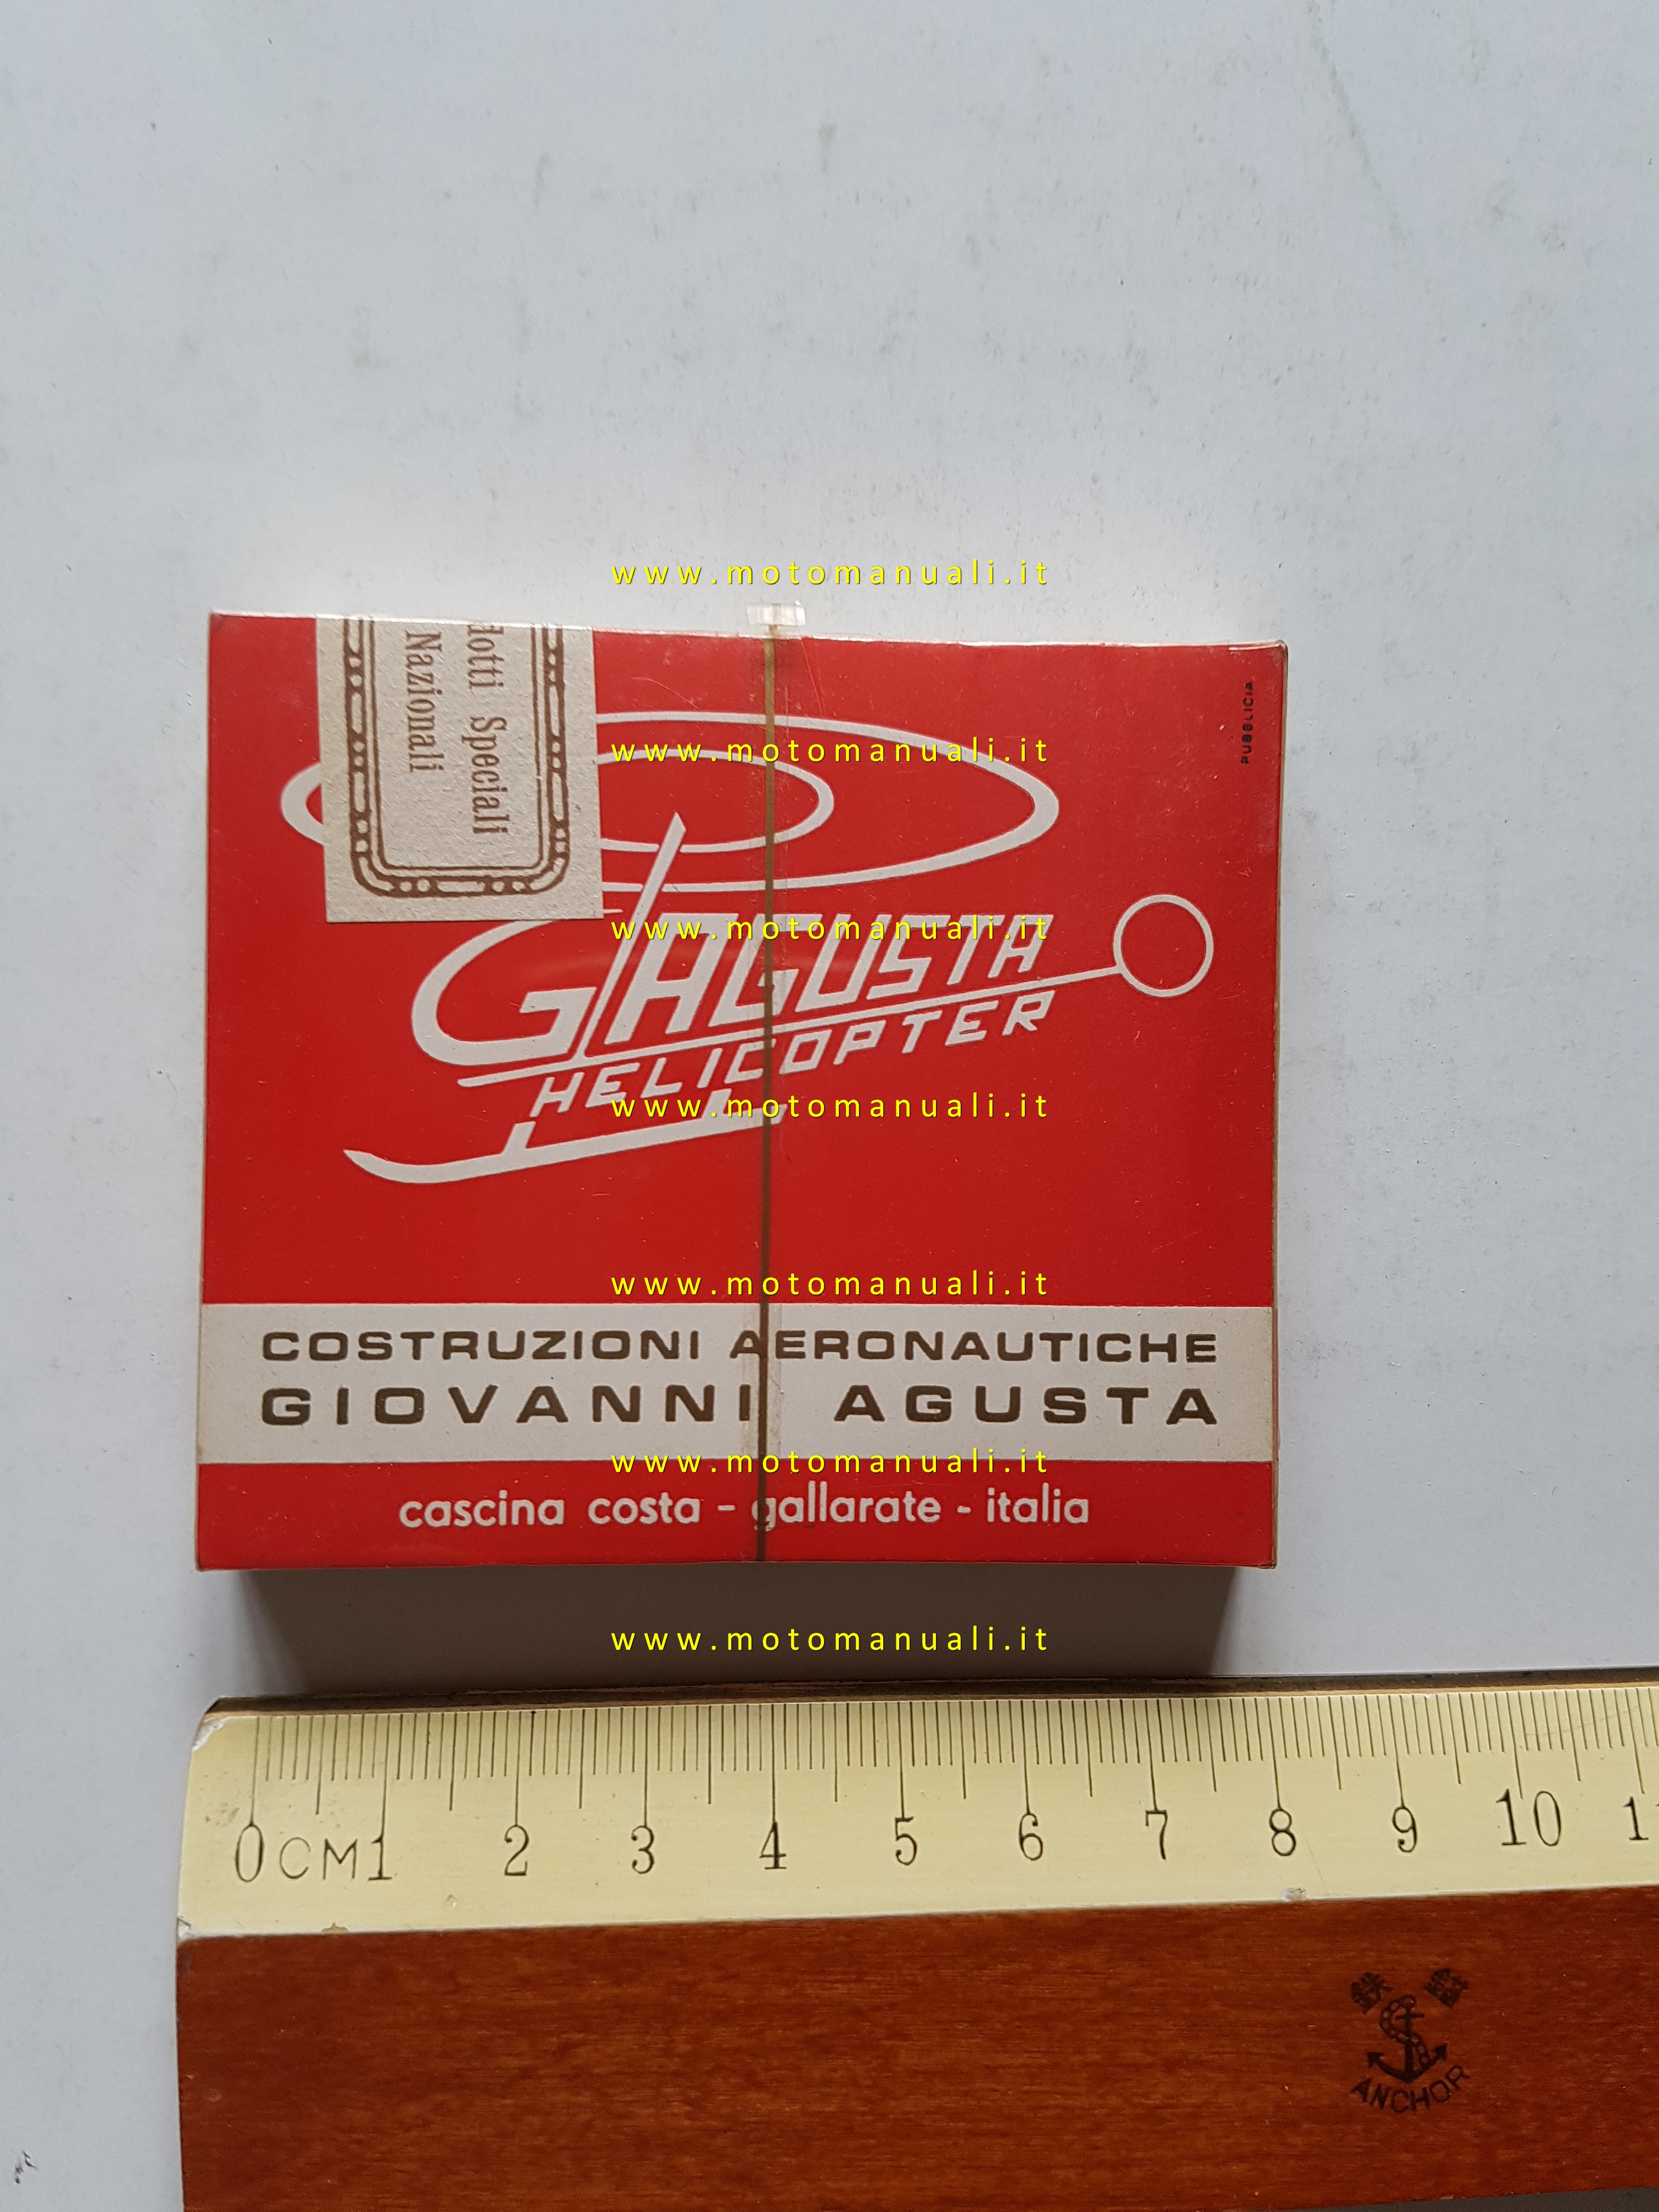 Agusta Elicotteri pacchetto sigarette promozionale anni 60 sigillato originale